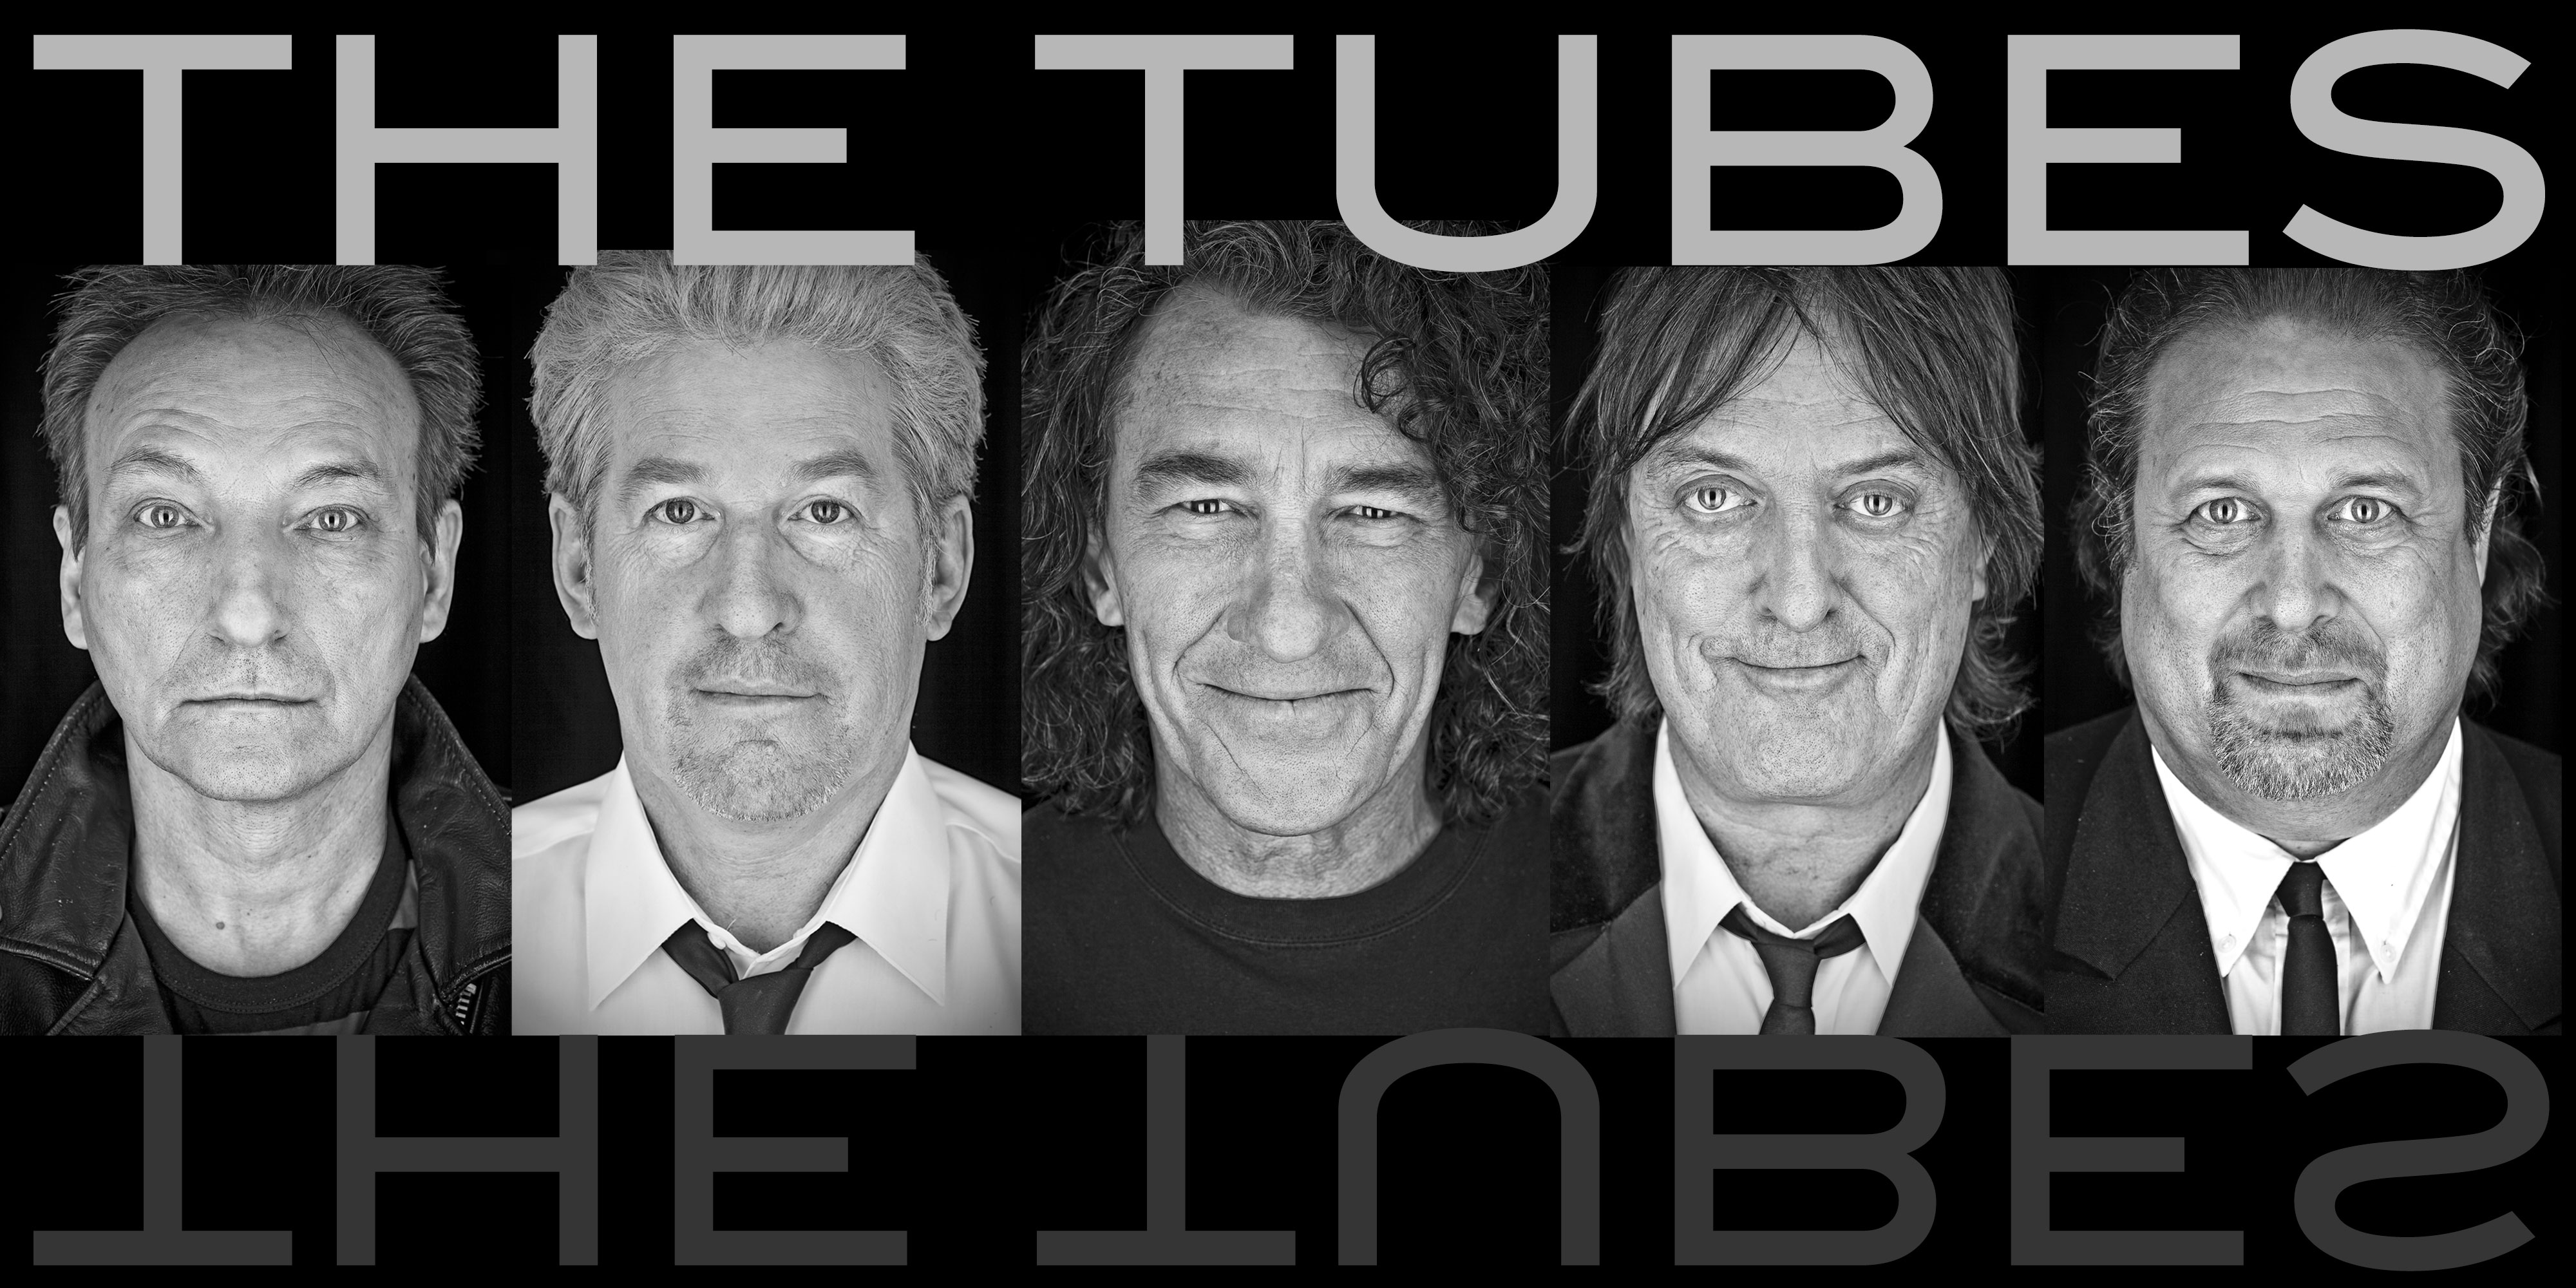 La banda de rock teatral The Tubes confirmó ayer que su bajista Rick Anderson murió a los 75 años sin revelar la causa del deceso